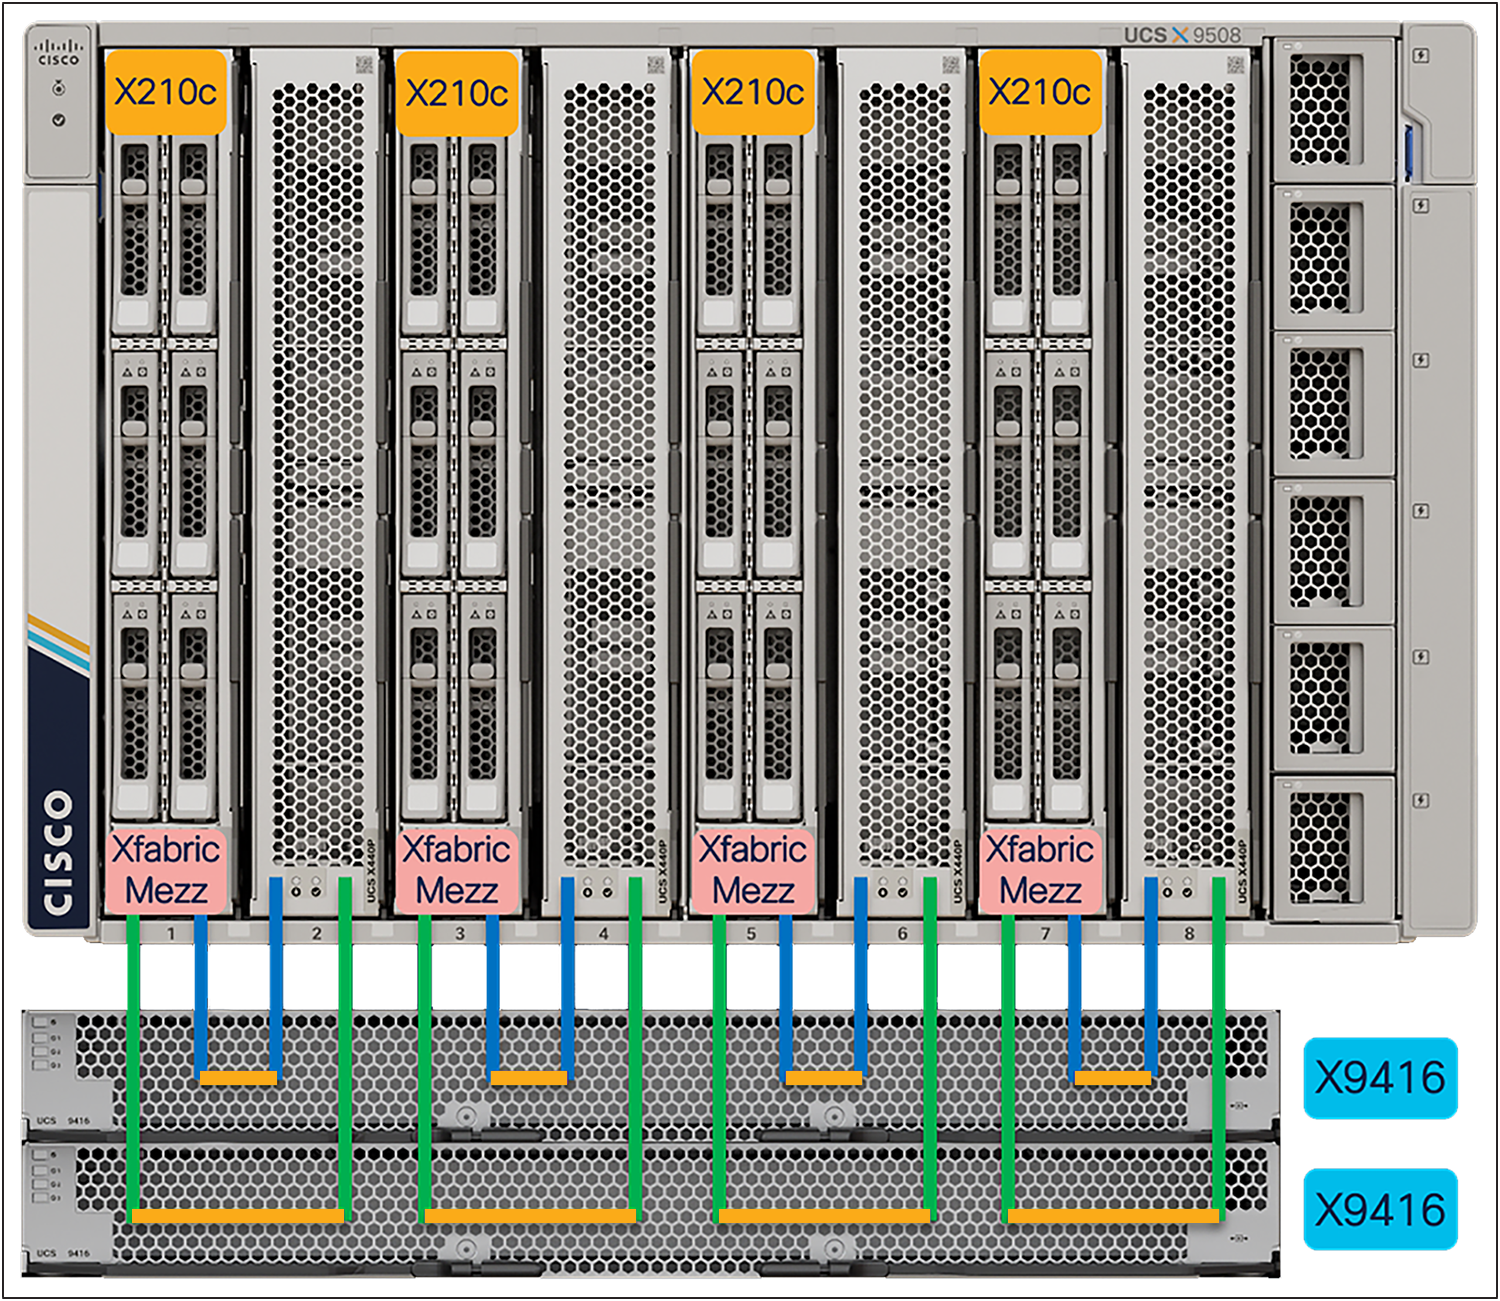 Cisco UCS X440p PCIe Node placement